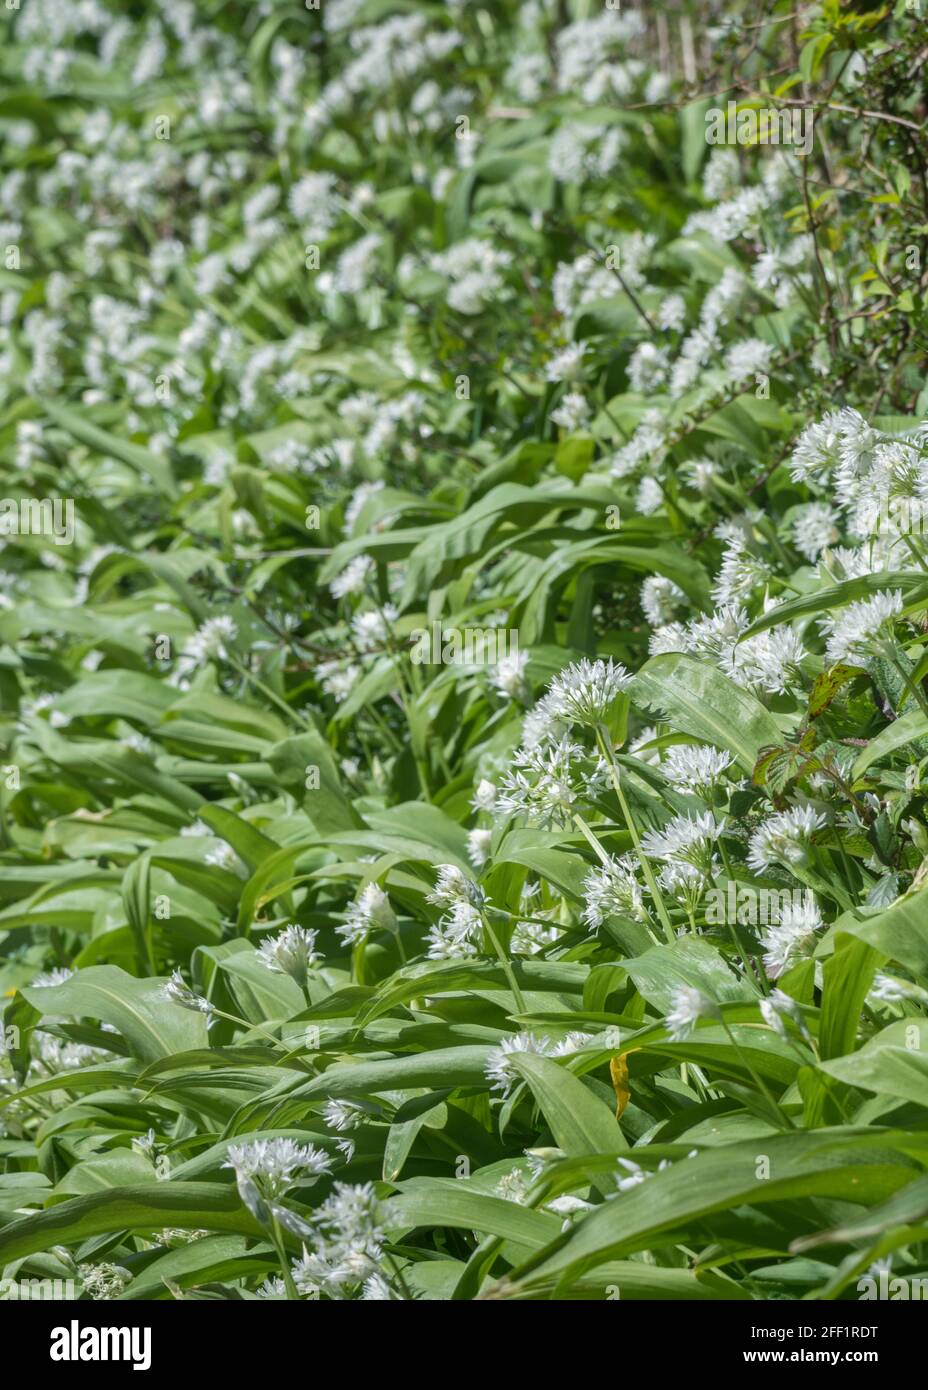 Fleurs blanches en masse de l'ail sauvage appelé Ramsons / Allium ursinum. Un vert sauvage comestible et savoureux, autrefois utilisé comme plante médicinale Banque D'Images